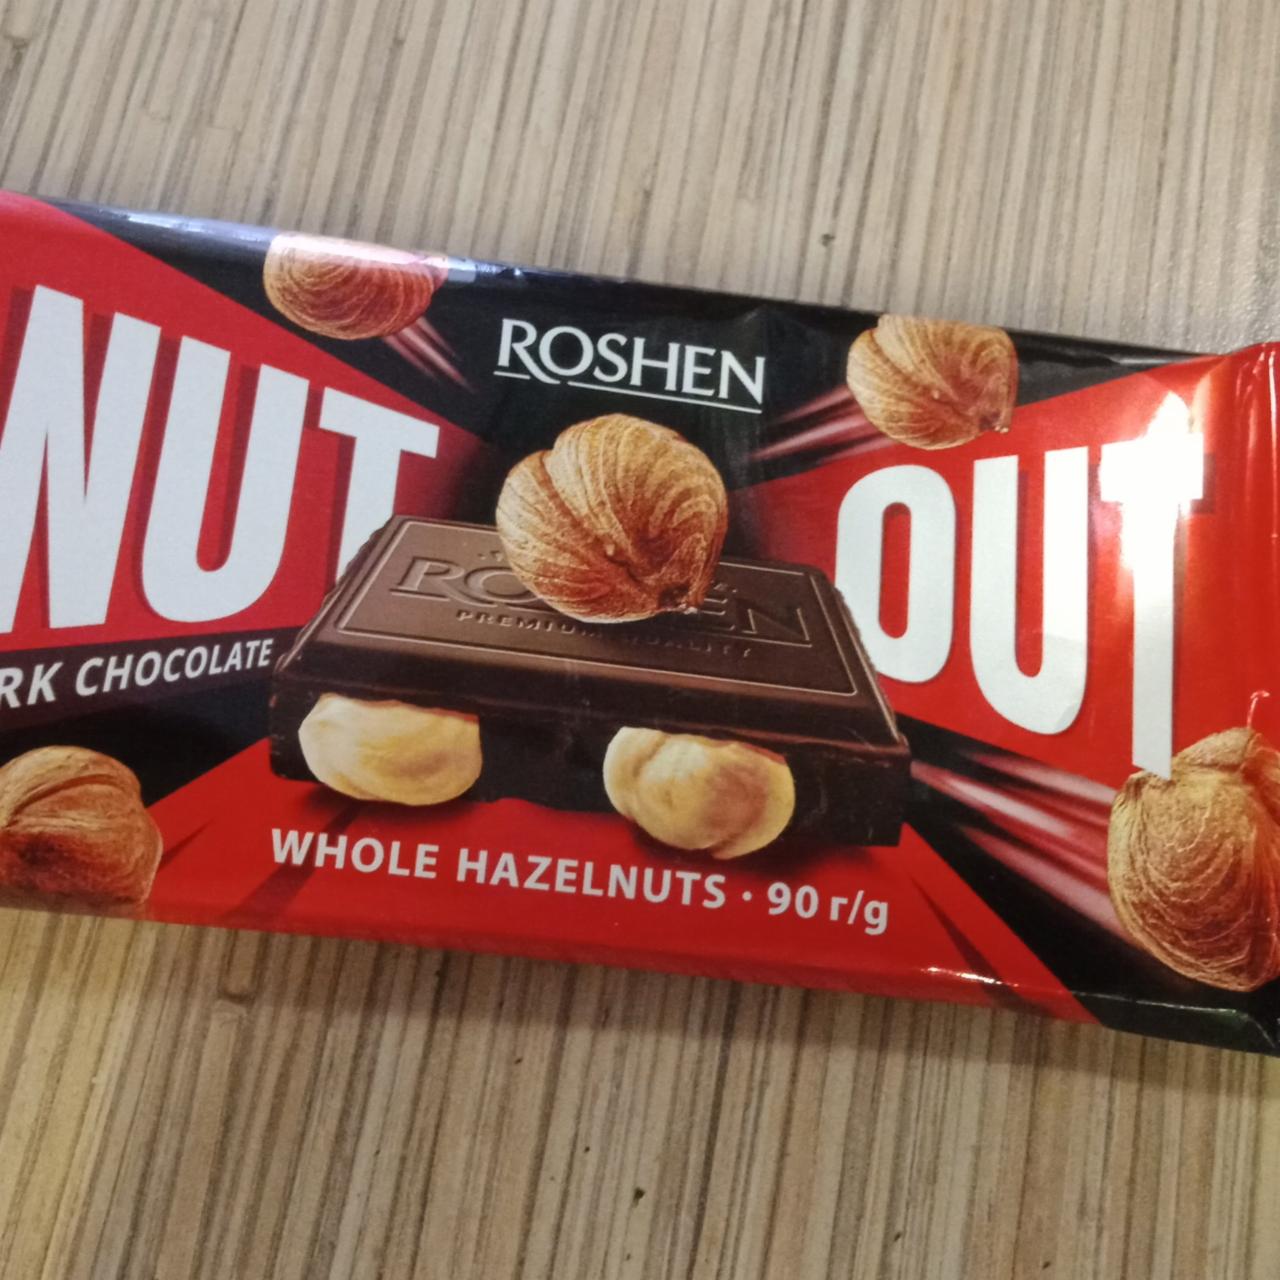 Фото - Темный шоколад с цельным орехом нутоут dark chocolate whole hazelnuts nutout Roshen